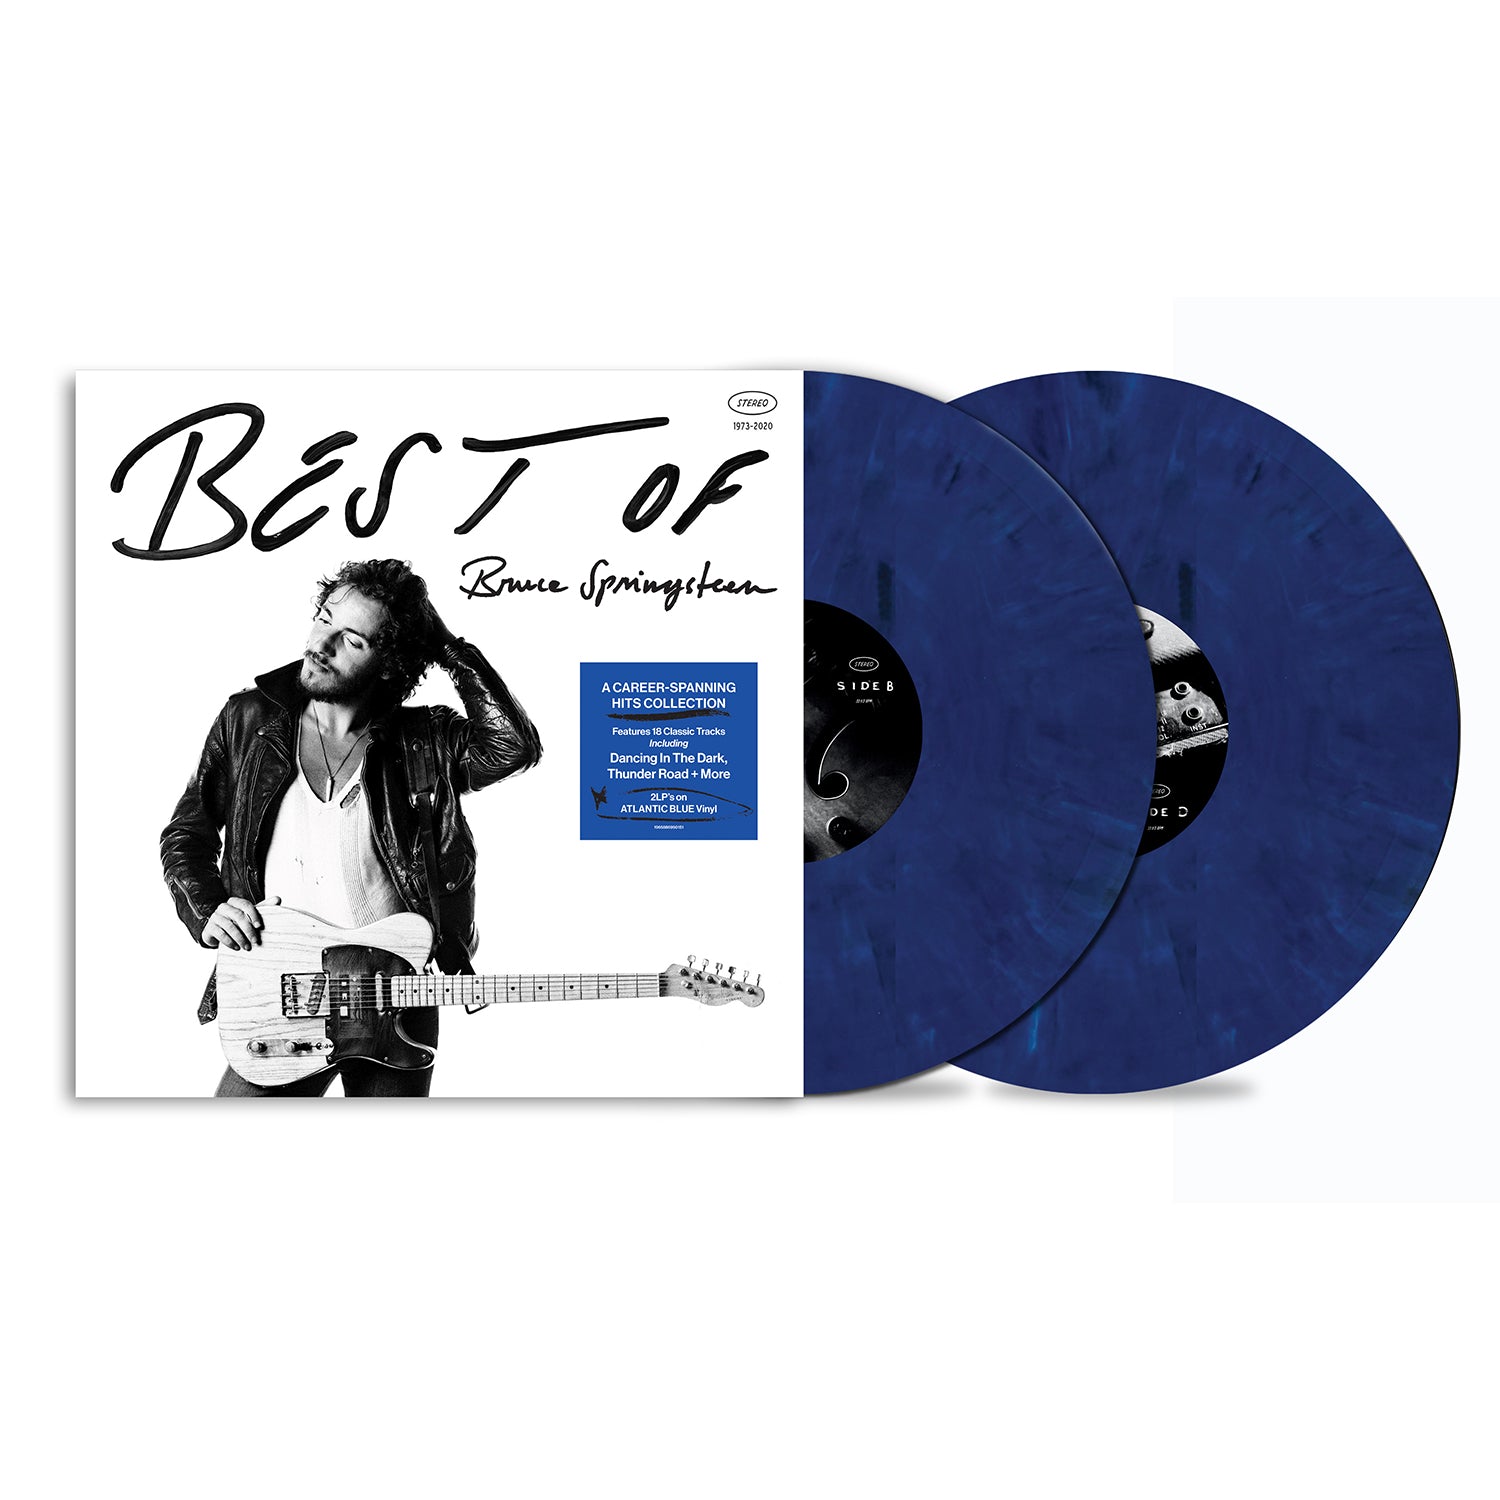 Bruce Springsteen / Best of Bruce Springsteen indie atlantic blue 2LP vinyl